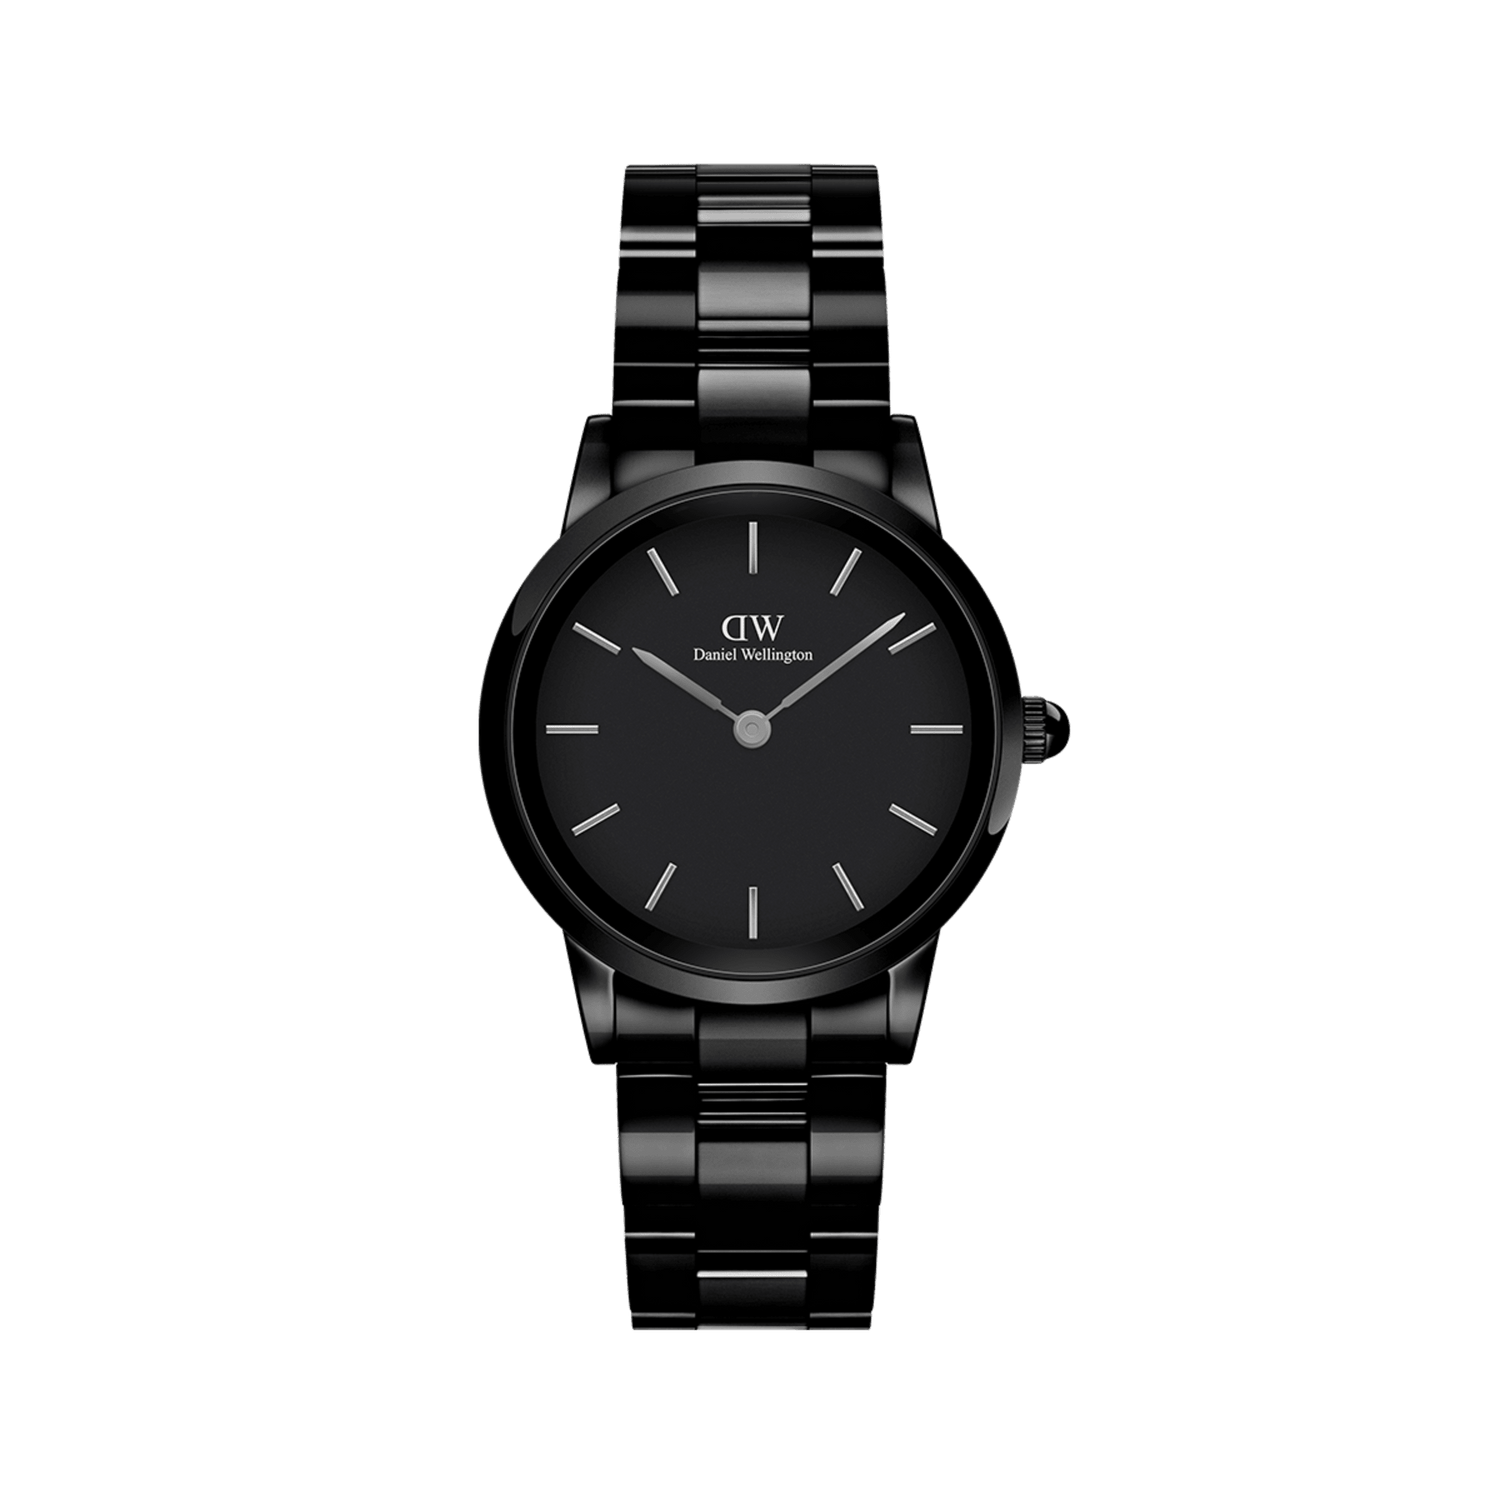 Iconic Link Ceramic watch: Trong khi các đồng hồ thông minh ngày càng phổ biến, Iconic Link Ceramic watch vẫn mang đến cho bạn sự sang trọng và đẳng cấp. Với thiết kế đơn giản nhưng tinh tế, đồng hồ này trở thành phụ kiện hoàn hảo cho bất cứ trang phục nào của bạn.